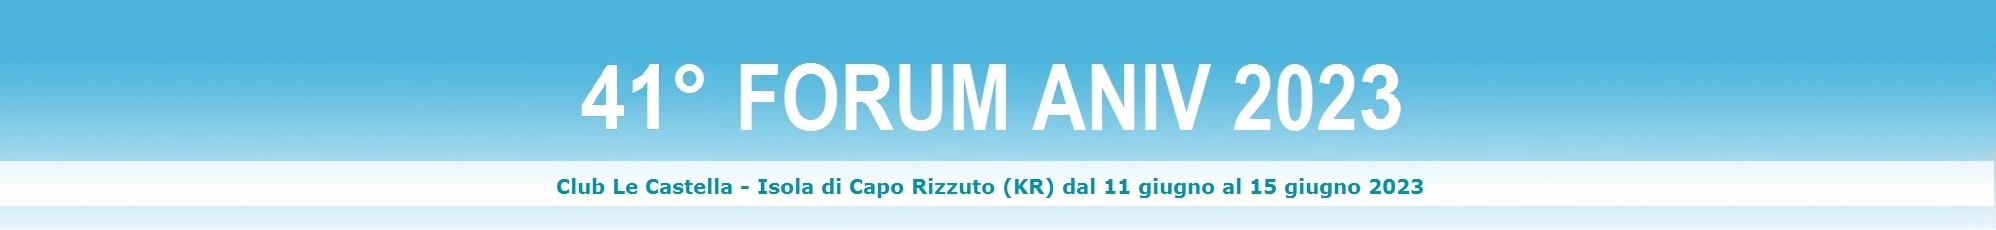 banner forum 2020